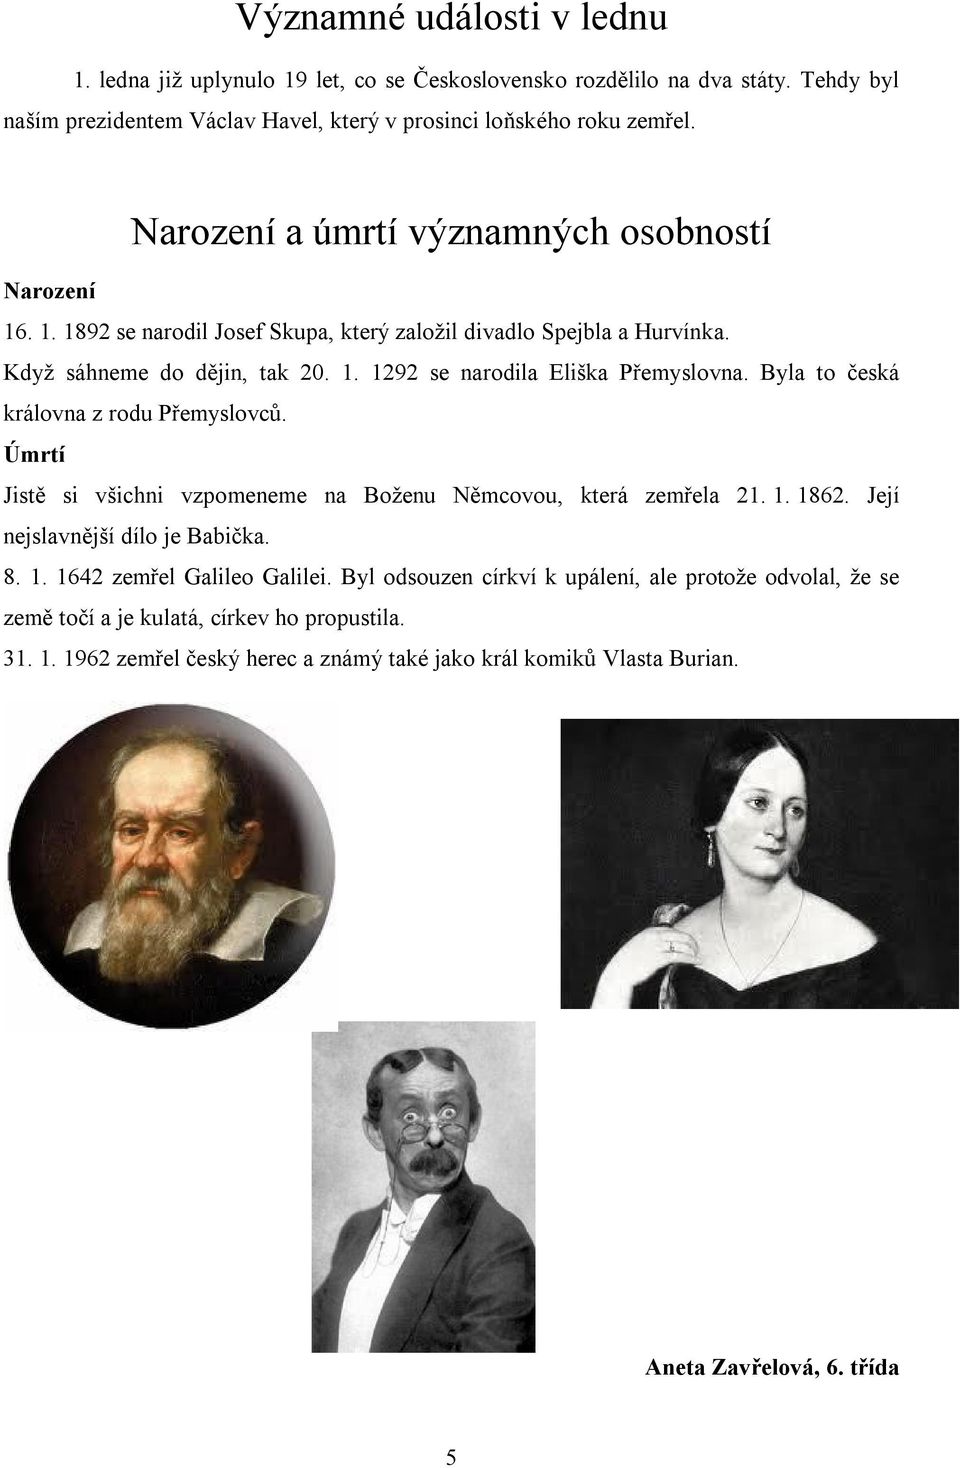 Byla to česká královna z rodu Přemyslovců. Úmrtí Jistě si všichni vzpomeneme na Boženu Němcovou, která zemřela 21. 1. 1862. Její nejslavnější dílo je Babička. 8. 1. 1642 zemřel Galileo Galilei.